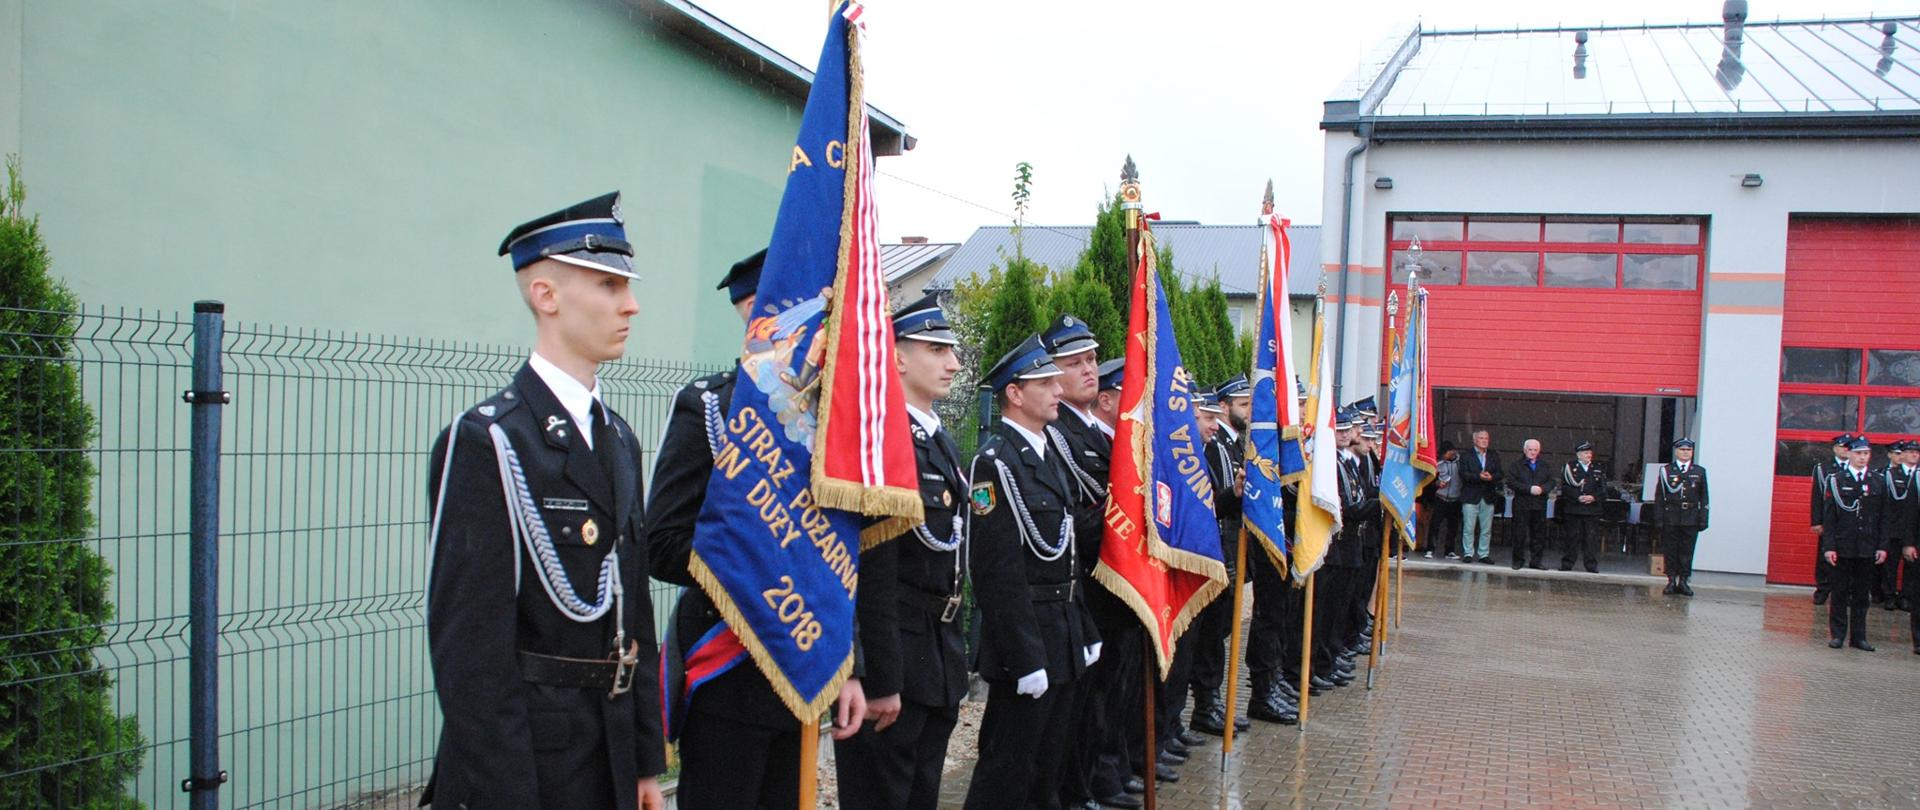 Jubileusz 90-lecia powstania jednostki Ochotniczej Straży Pożarnej w Borzęcinie Dużym, strażacy i zaproszeni goście podczas uroczystości.